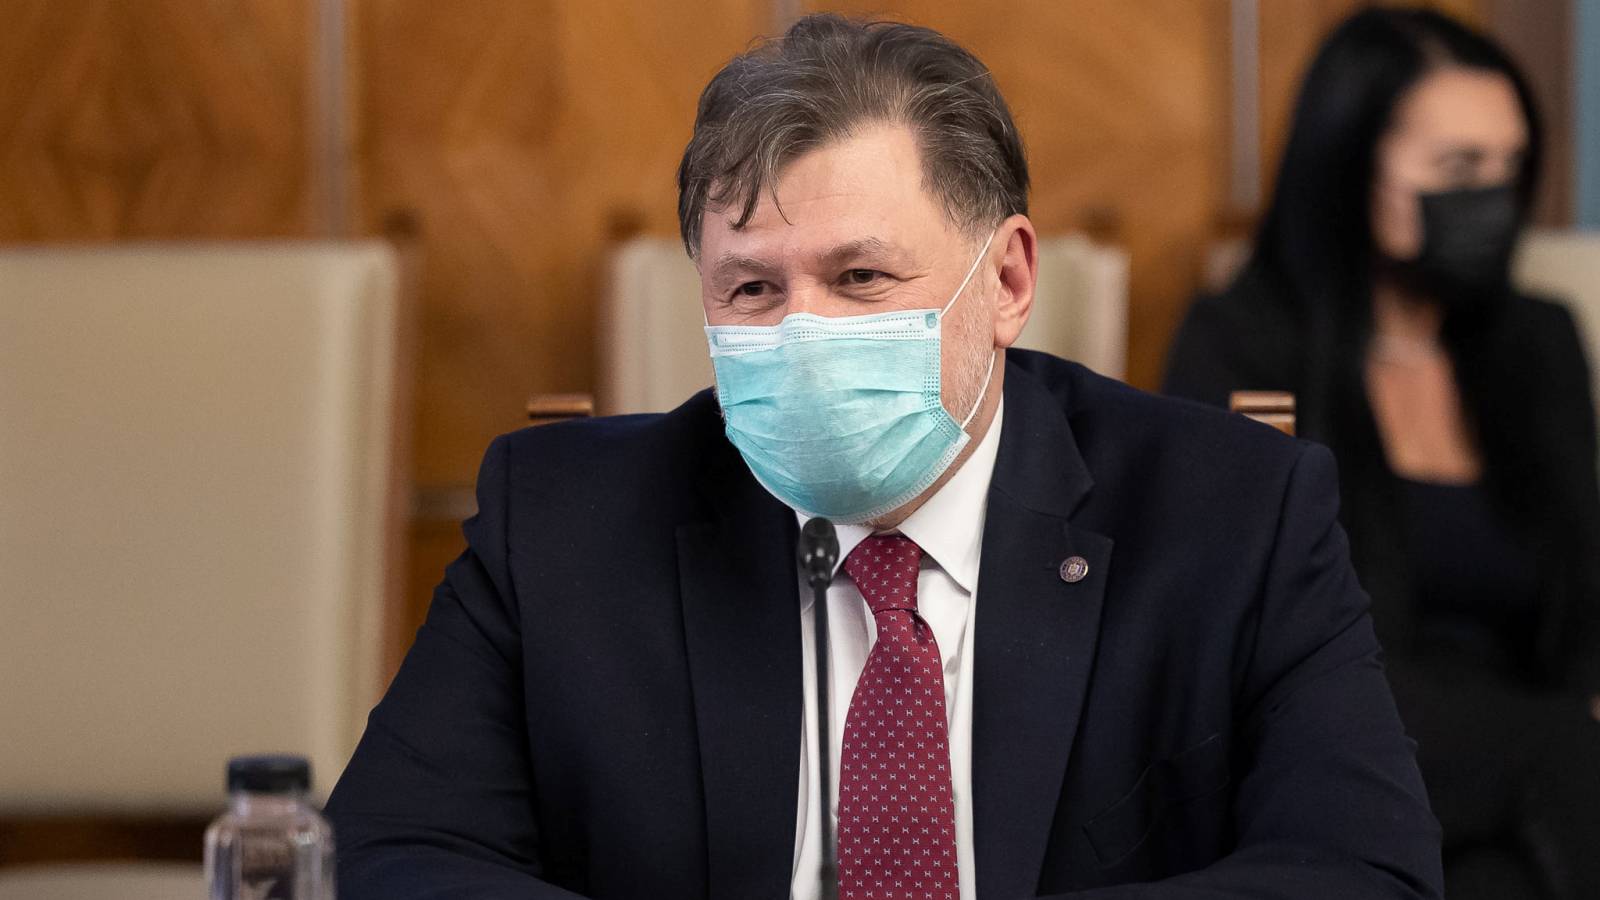 Sundhedsminister Last Minute annoncerede foranstaltninger påvirker Rumænien